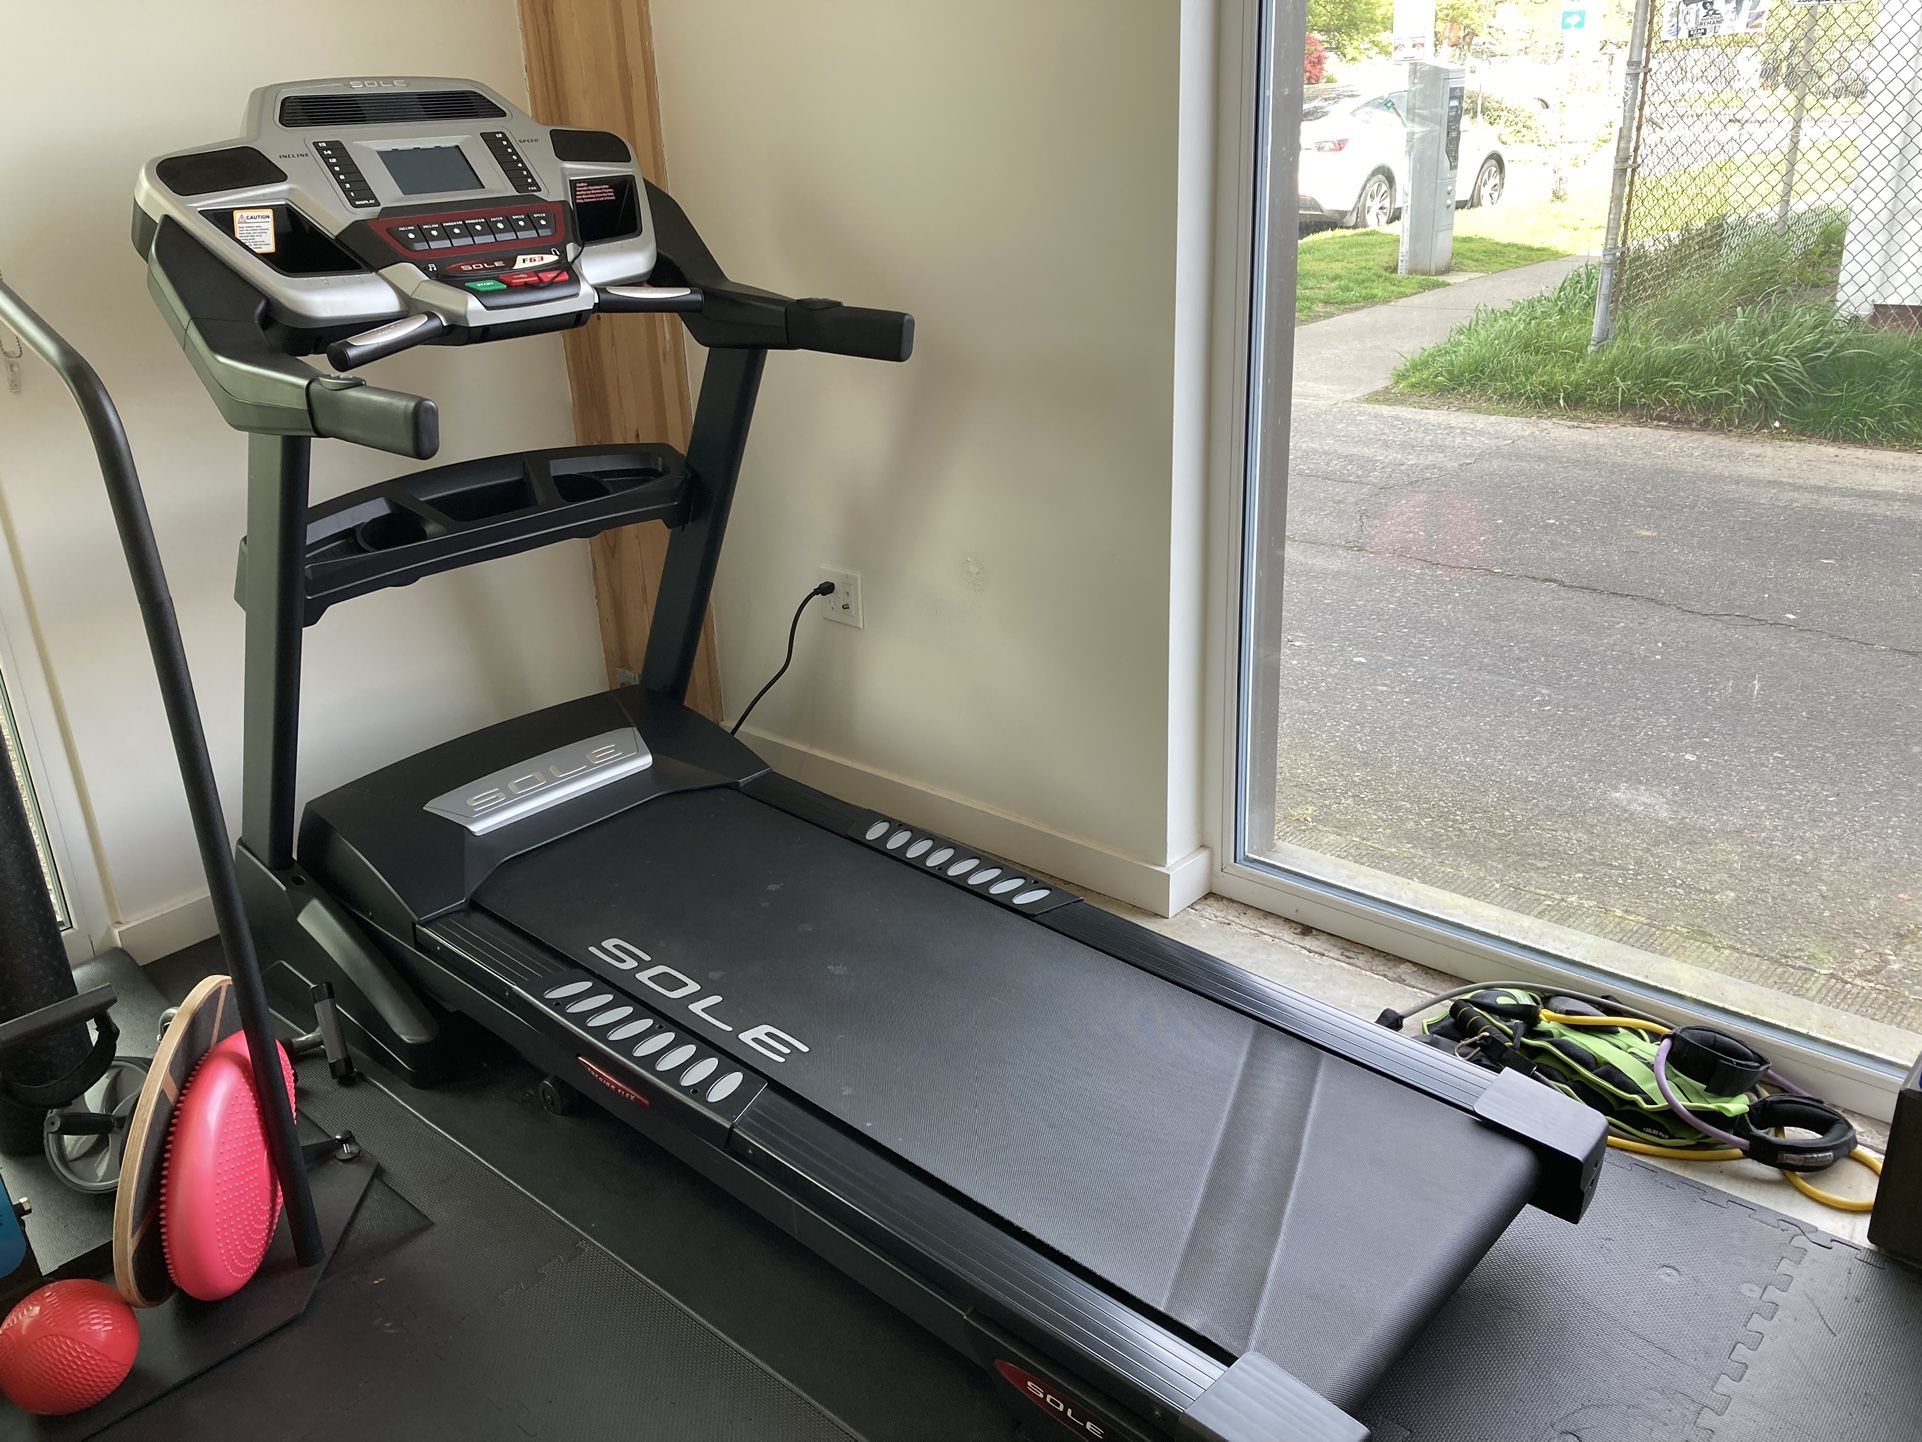 Sole Treadmill F63